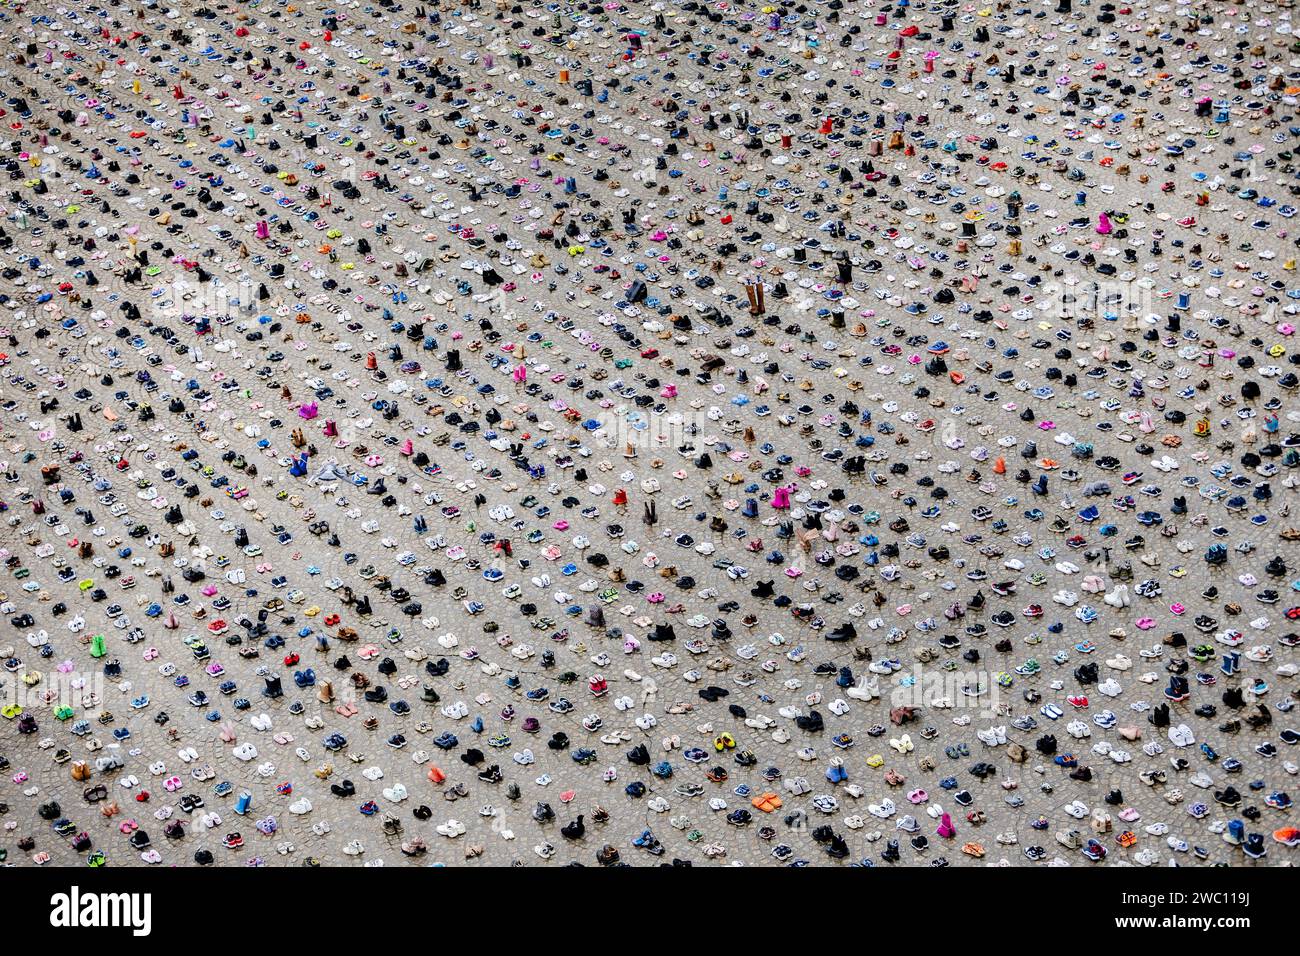 AMSTERDAM - Tausende von Kinderschuhen befinden sich auf dem Dam-Platz während einer Gedenkveranstaltung für die Opfer von Kindern, die während des Krieges im Gazastreifen gefallen sind. Außerdem werden die Kindernamen von berühmten Holländern vorgelesen. ANP REMKO DE WAAL niederlande raus - belgien raus Stockfoto